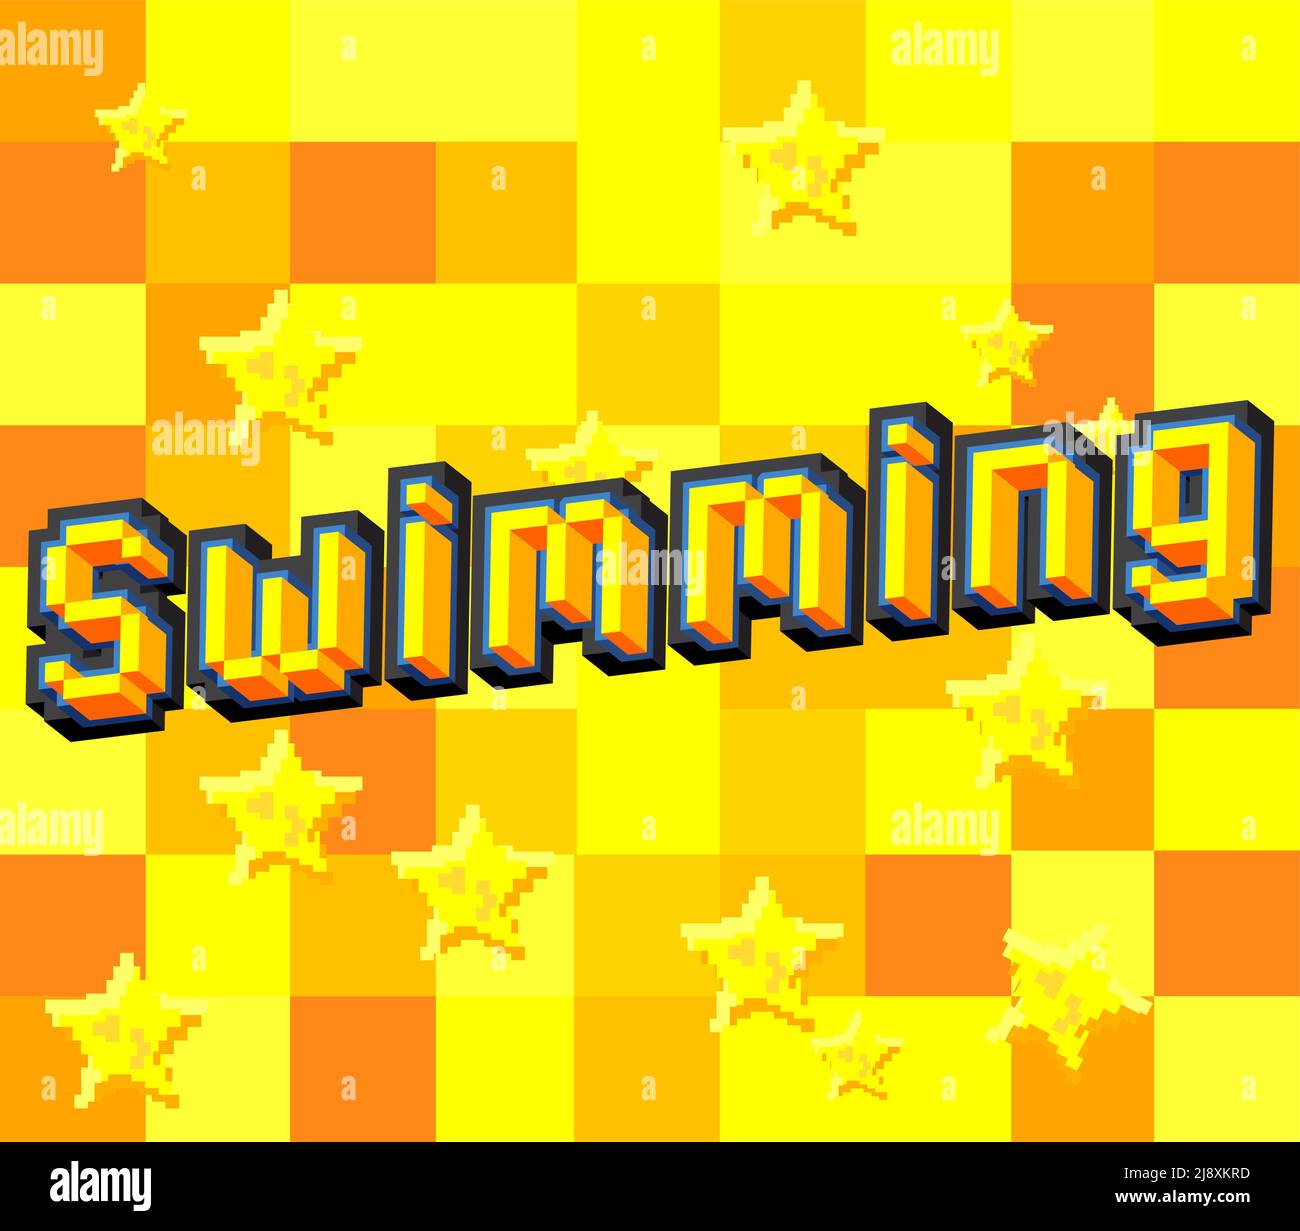 Schwimmen. Verpixeltes Wort mit geometrischem grafischem Hintergrund. Vektorgrafik Cartoon-Illustration. Stock Vektor